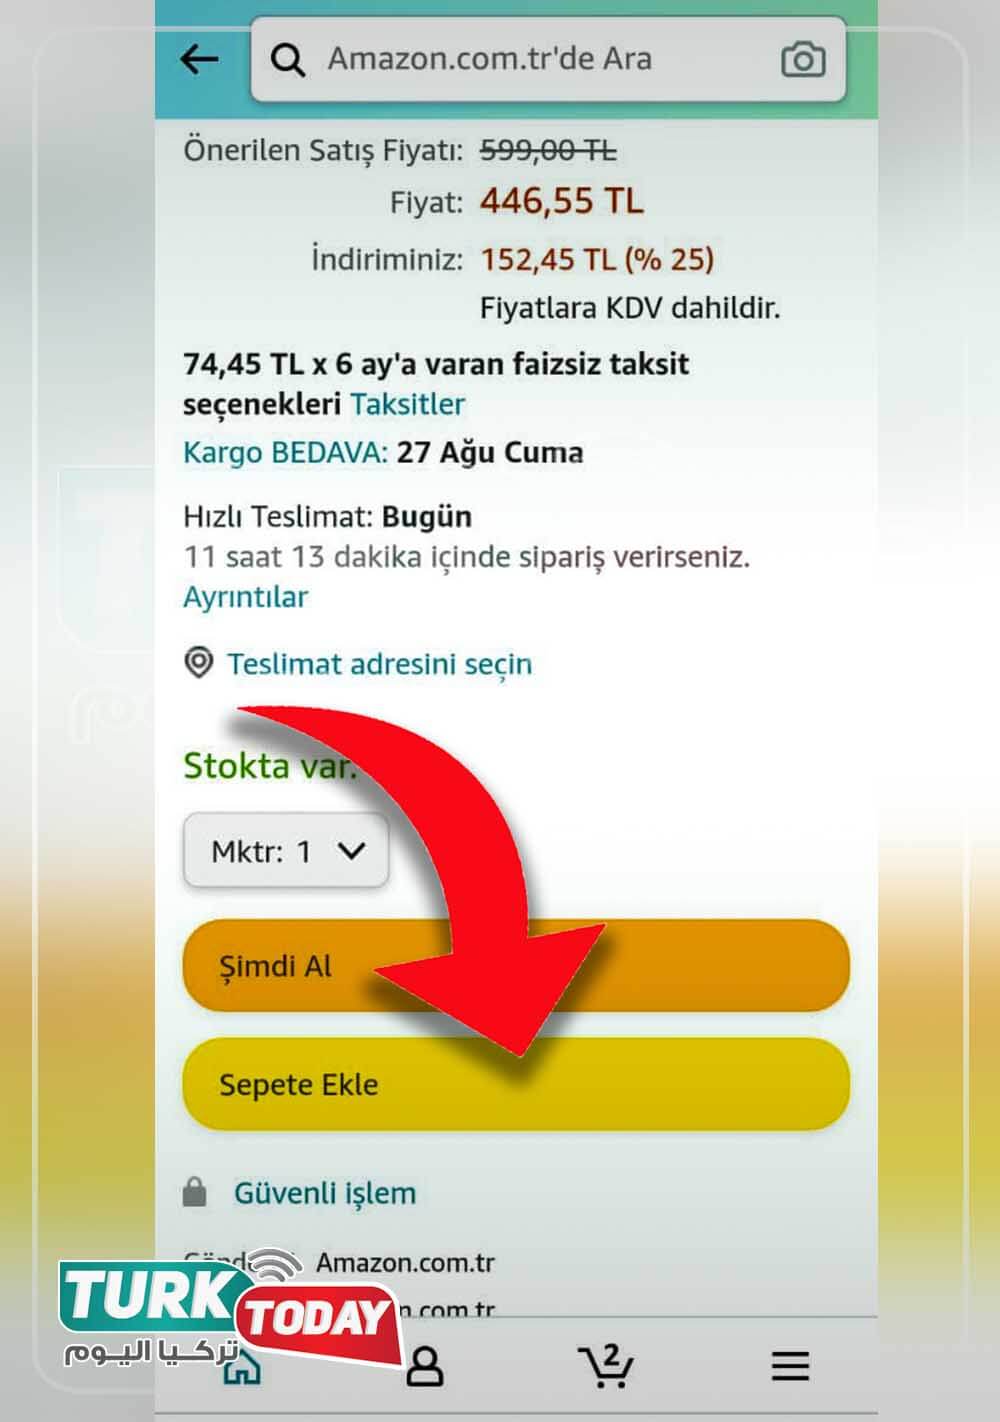 هل استطيع معرفة كيفية الشراء من أمازون في تركيا